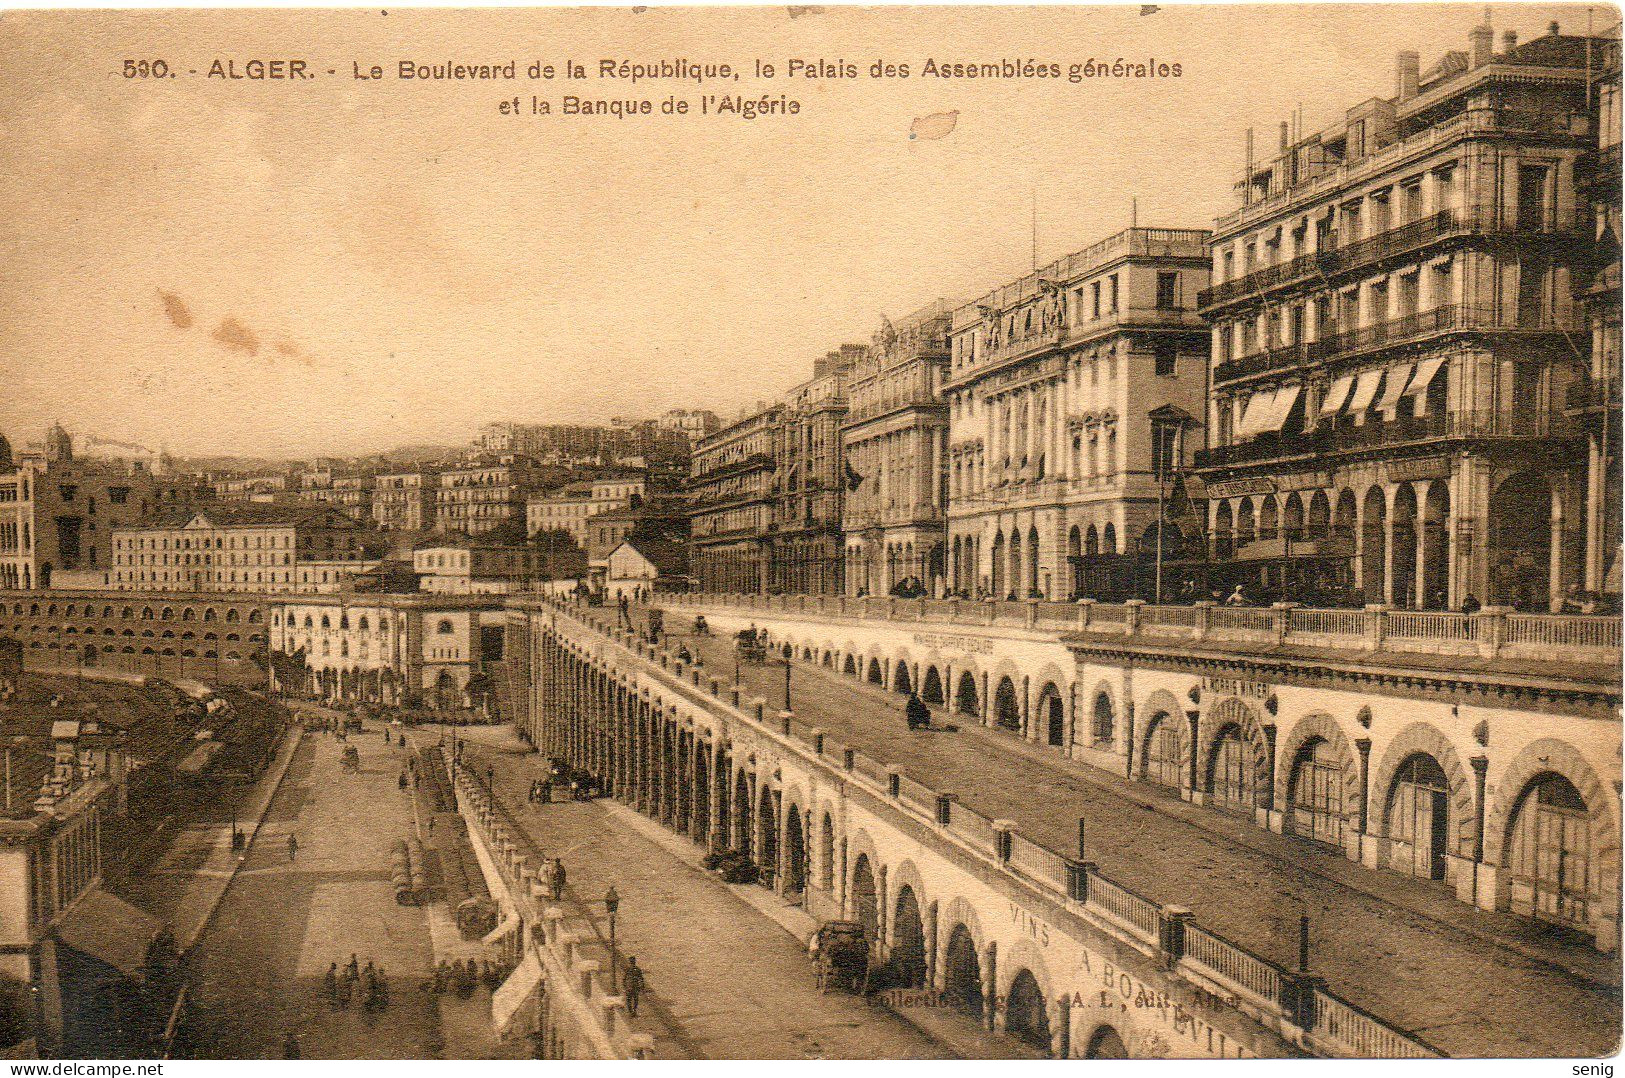 ALGERIE ALGER - 590 - Boulevard De La République Palais Des Assemblées Banque D'Algérie - Collection Régence (Leroux) - - Alger